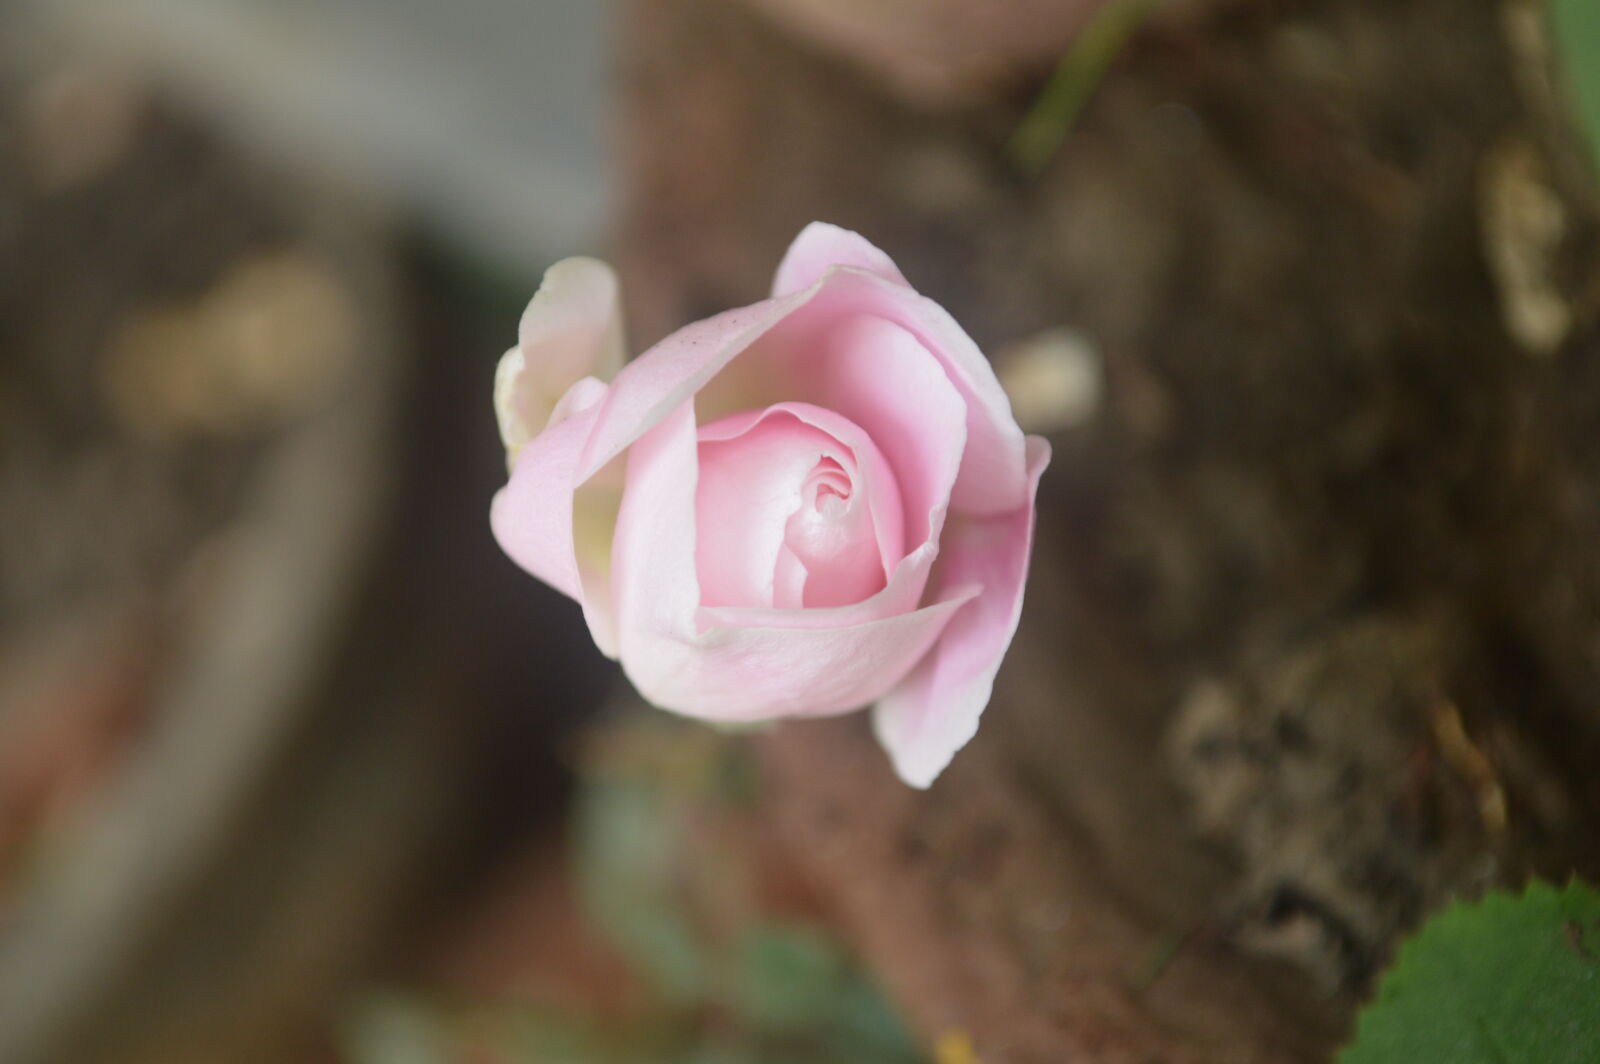 Nikon AF-S DX Nikkor 18-55mm F3.5-5.6G VR sample photo. Flower, pink, rose photography